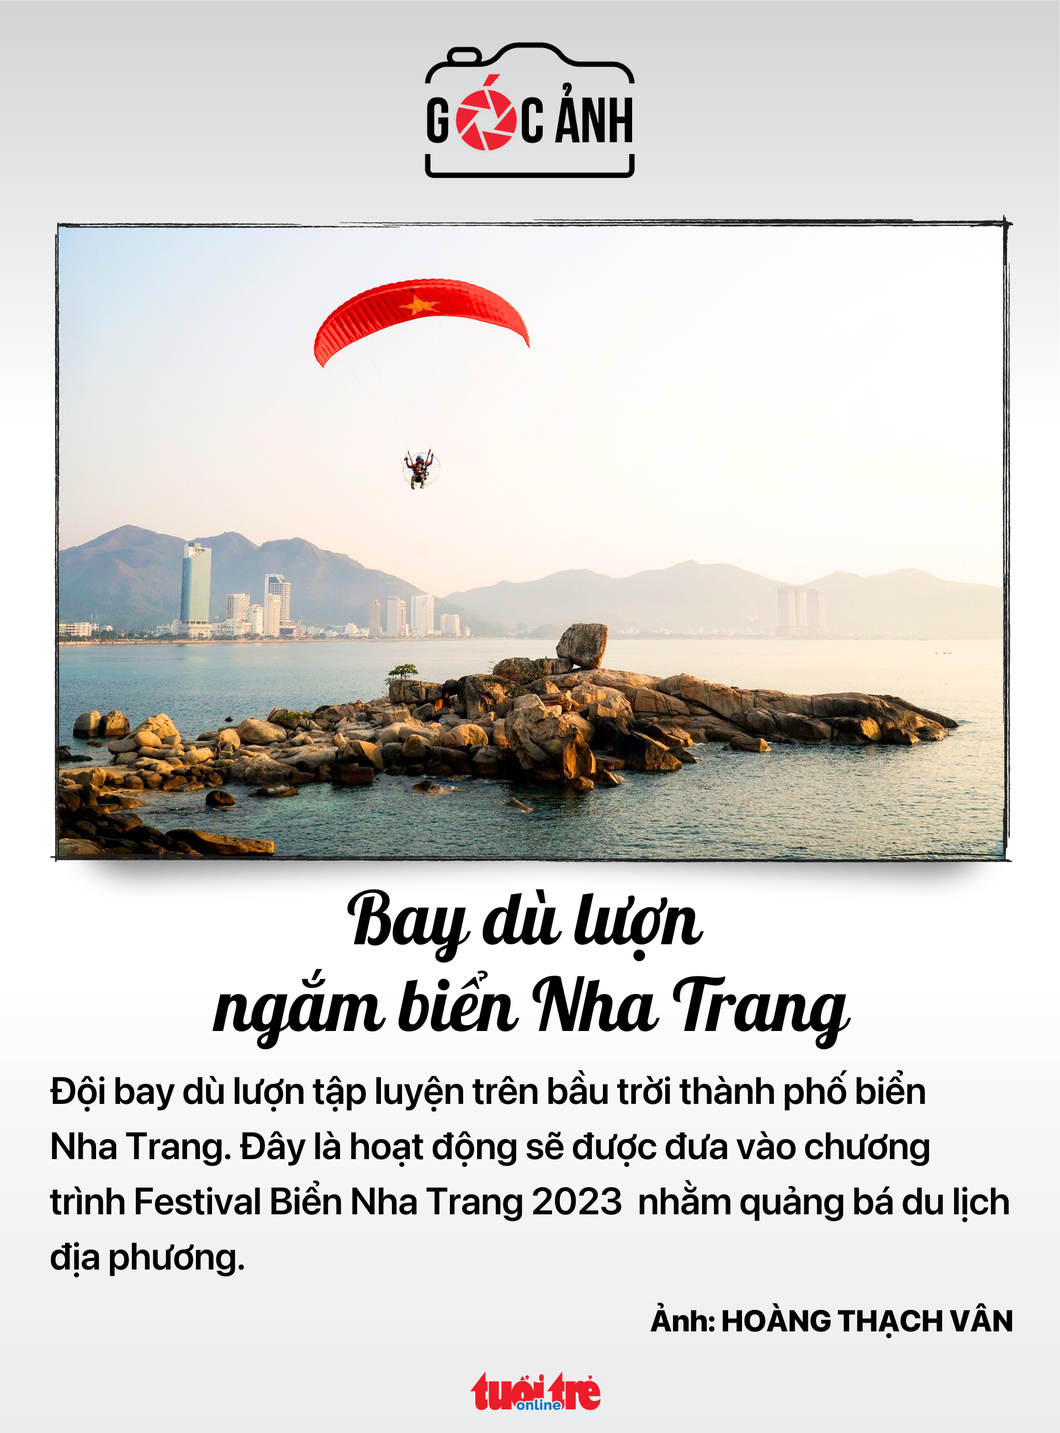 Bay dù lượn ngắm biển Nha Trang - Ảnh: HOÀNG THẠCH VÂN